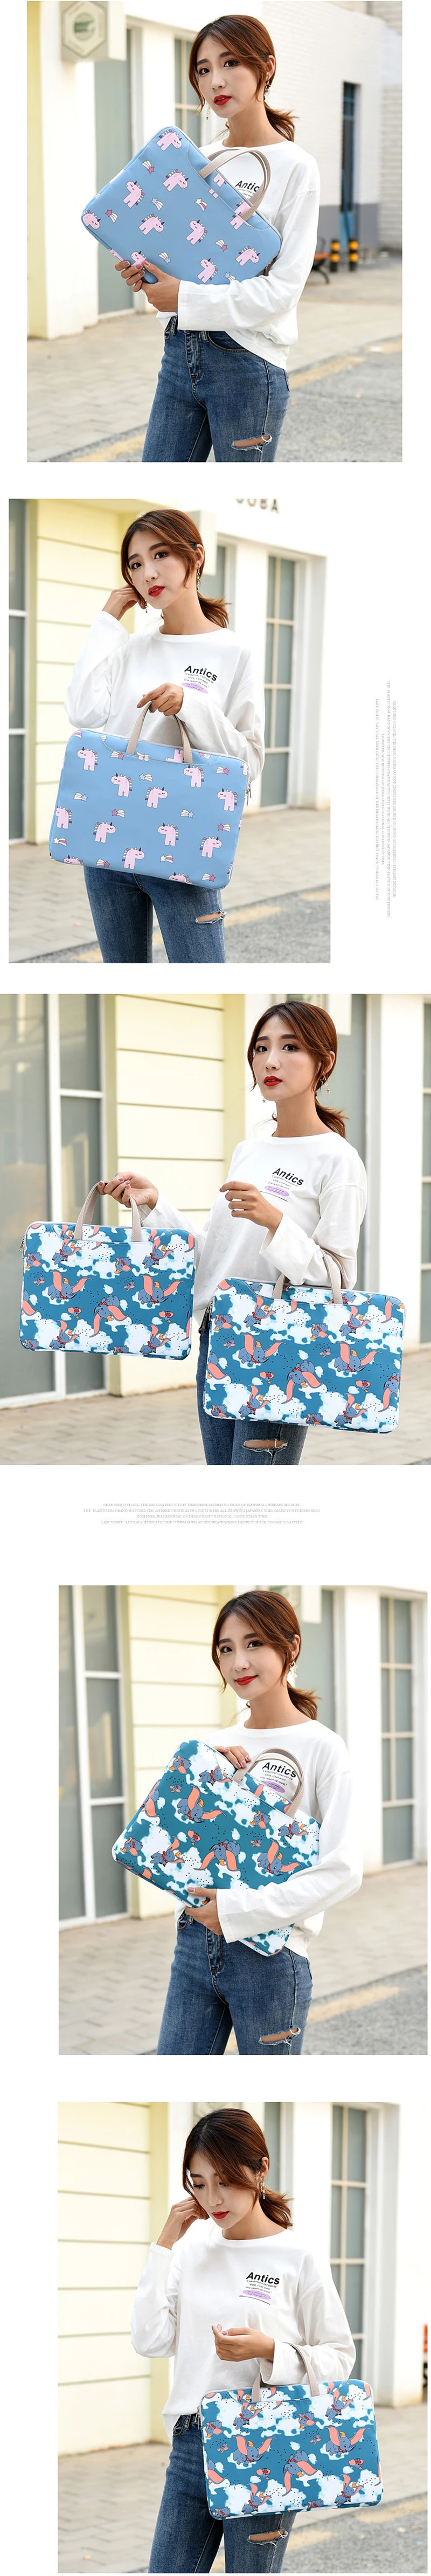 Милая сумка для ноутбука для девочки MacBook Air Pro lenovo 13,3 14 15,6 дюймов PC чехол для ноутбука сумка для ноутбука для модной женщины